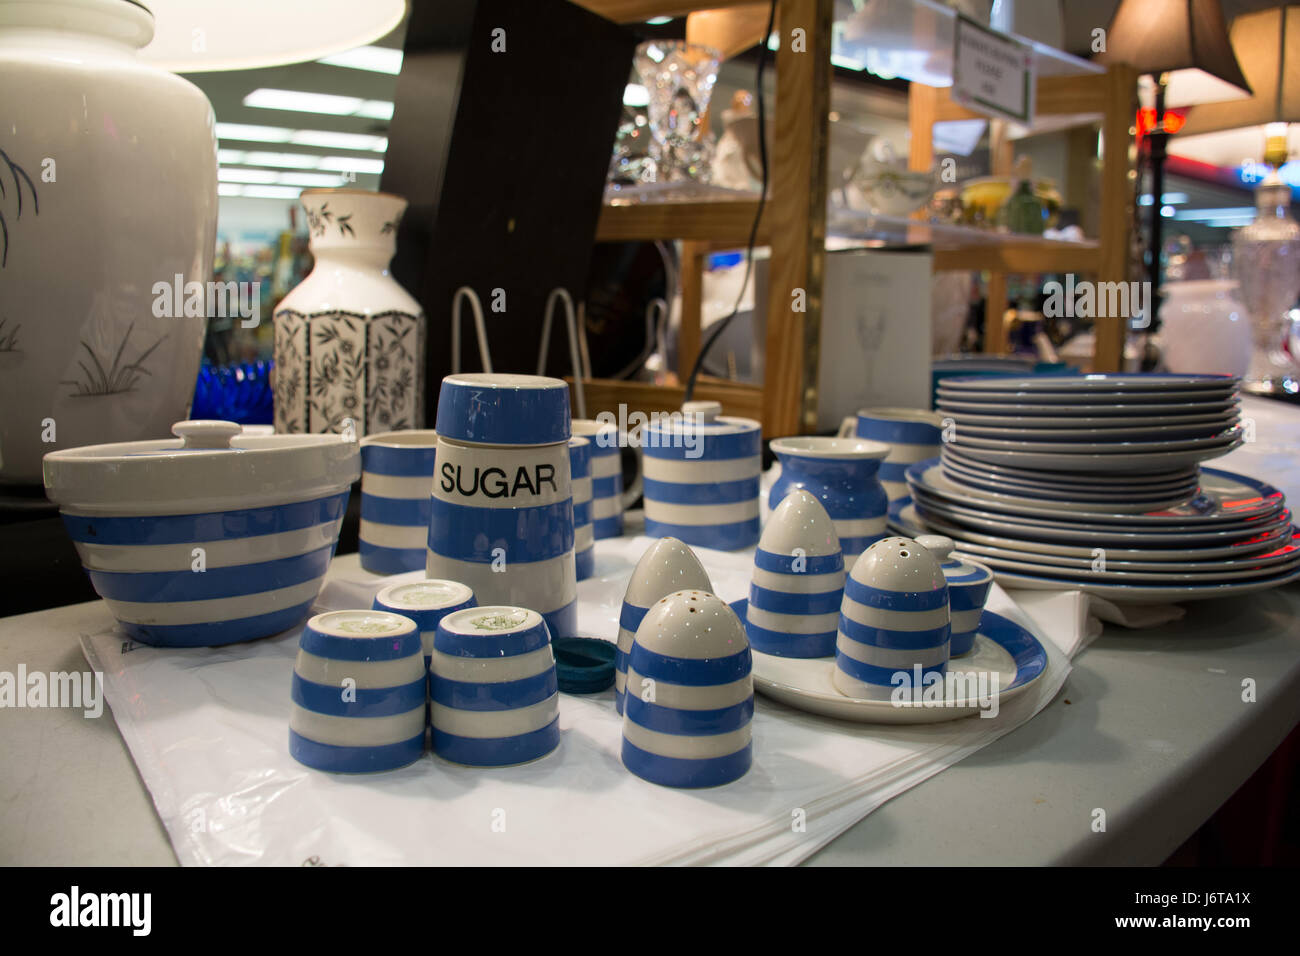 Cornishware bleu et blanc Collection de vaisselle Banque D'Images